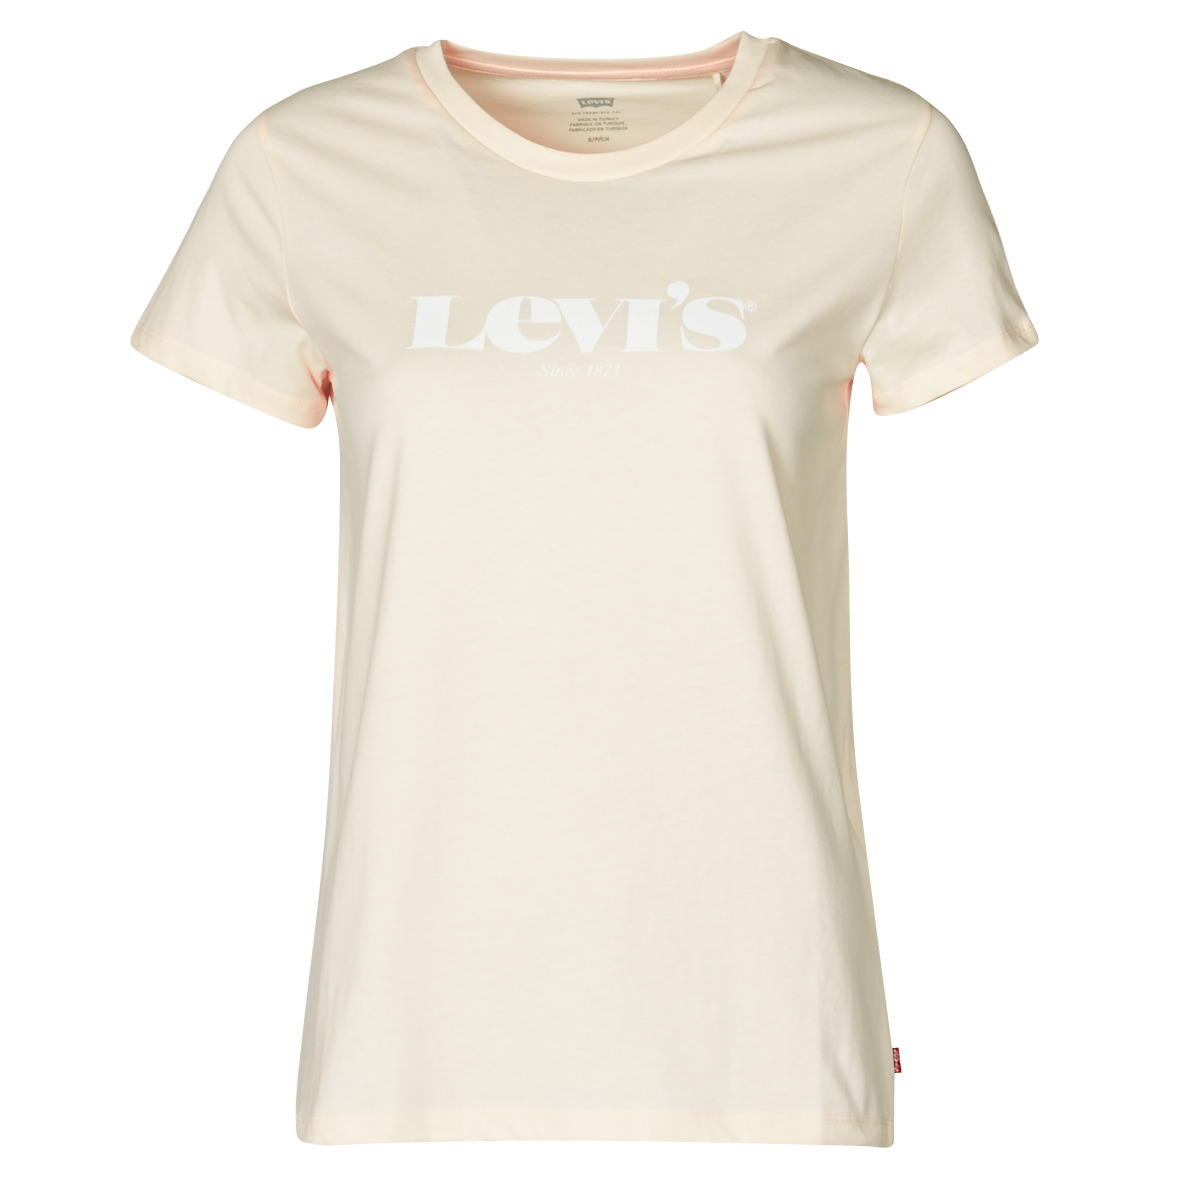 Abbigliamento Donna T-shirt maniche corte Levi's THE PERFECT TEE 